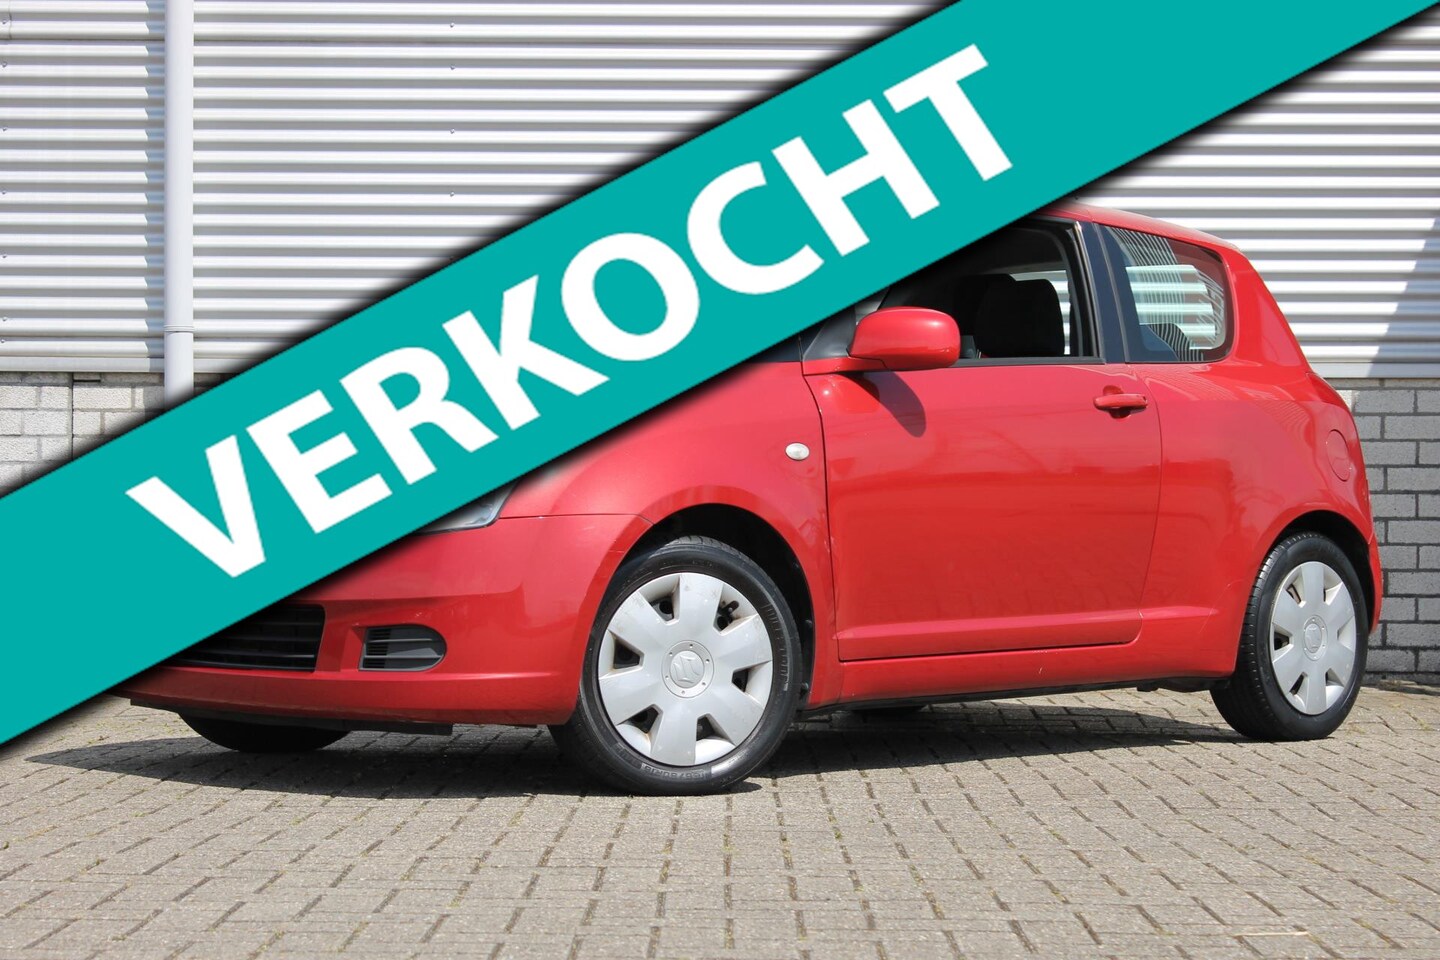 Suzuki Swift 1.3 GLS | AIRCO | ELEK. RAMEN | NAP | 3 EIGENAREN | 2007  Benzine - Occasion te koop op AutoWereld.nl